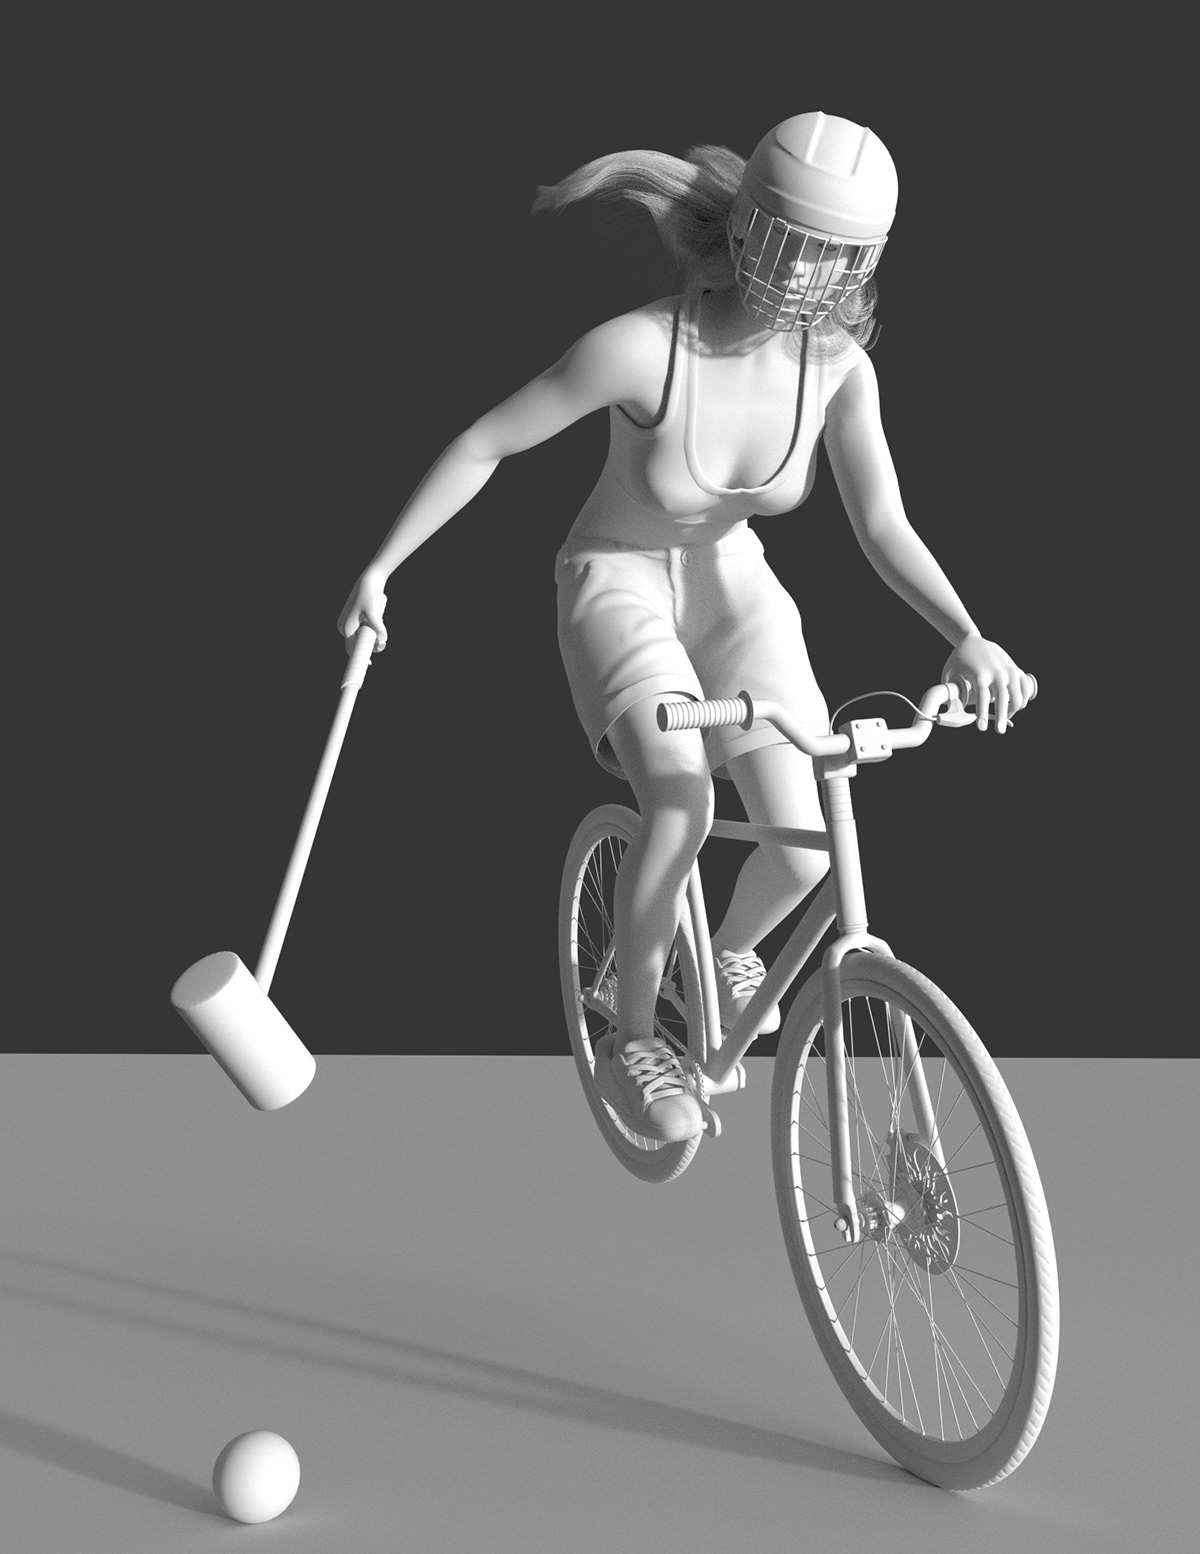 Bike bike polo girl sport